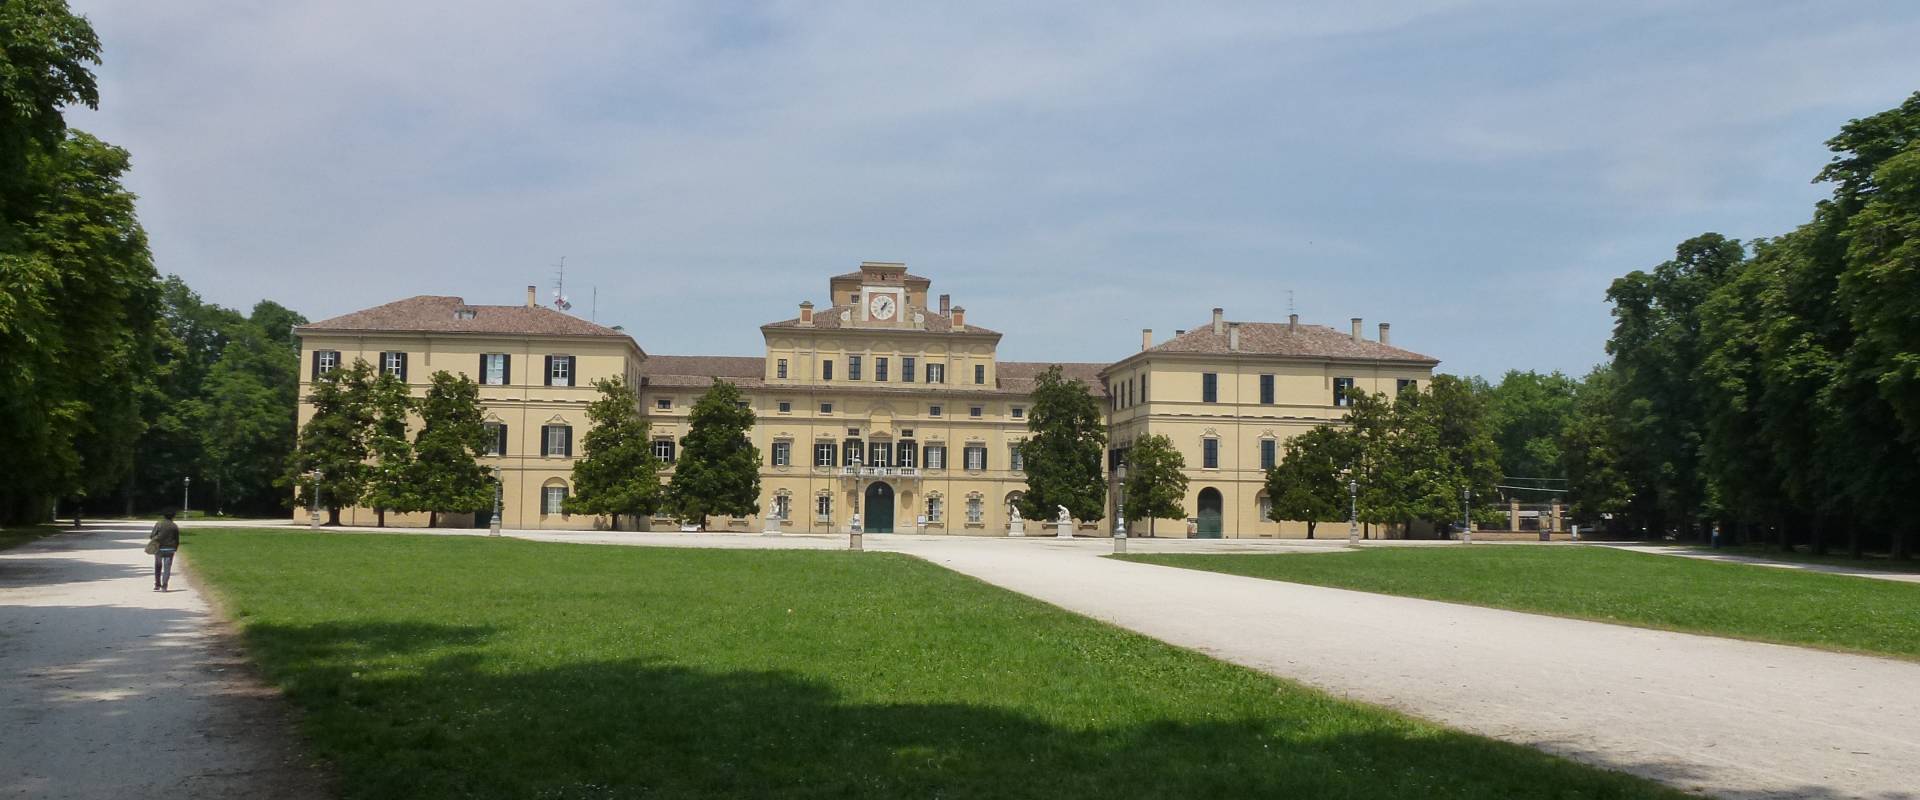 Parco e Palazzo Ducale Parma foto di Eliocommons